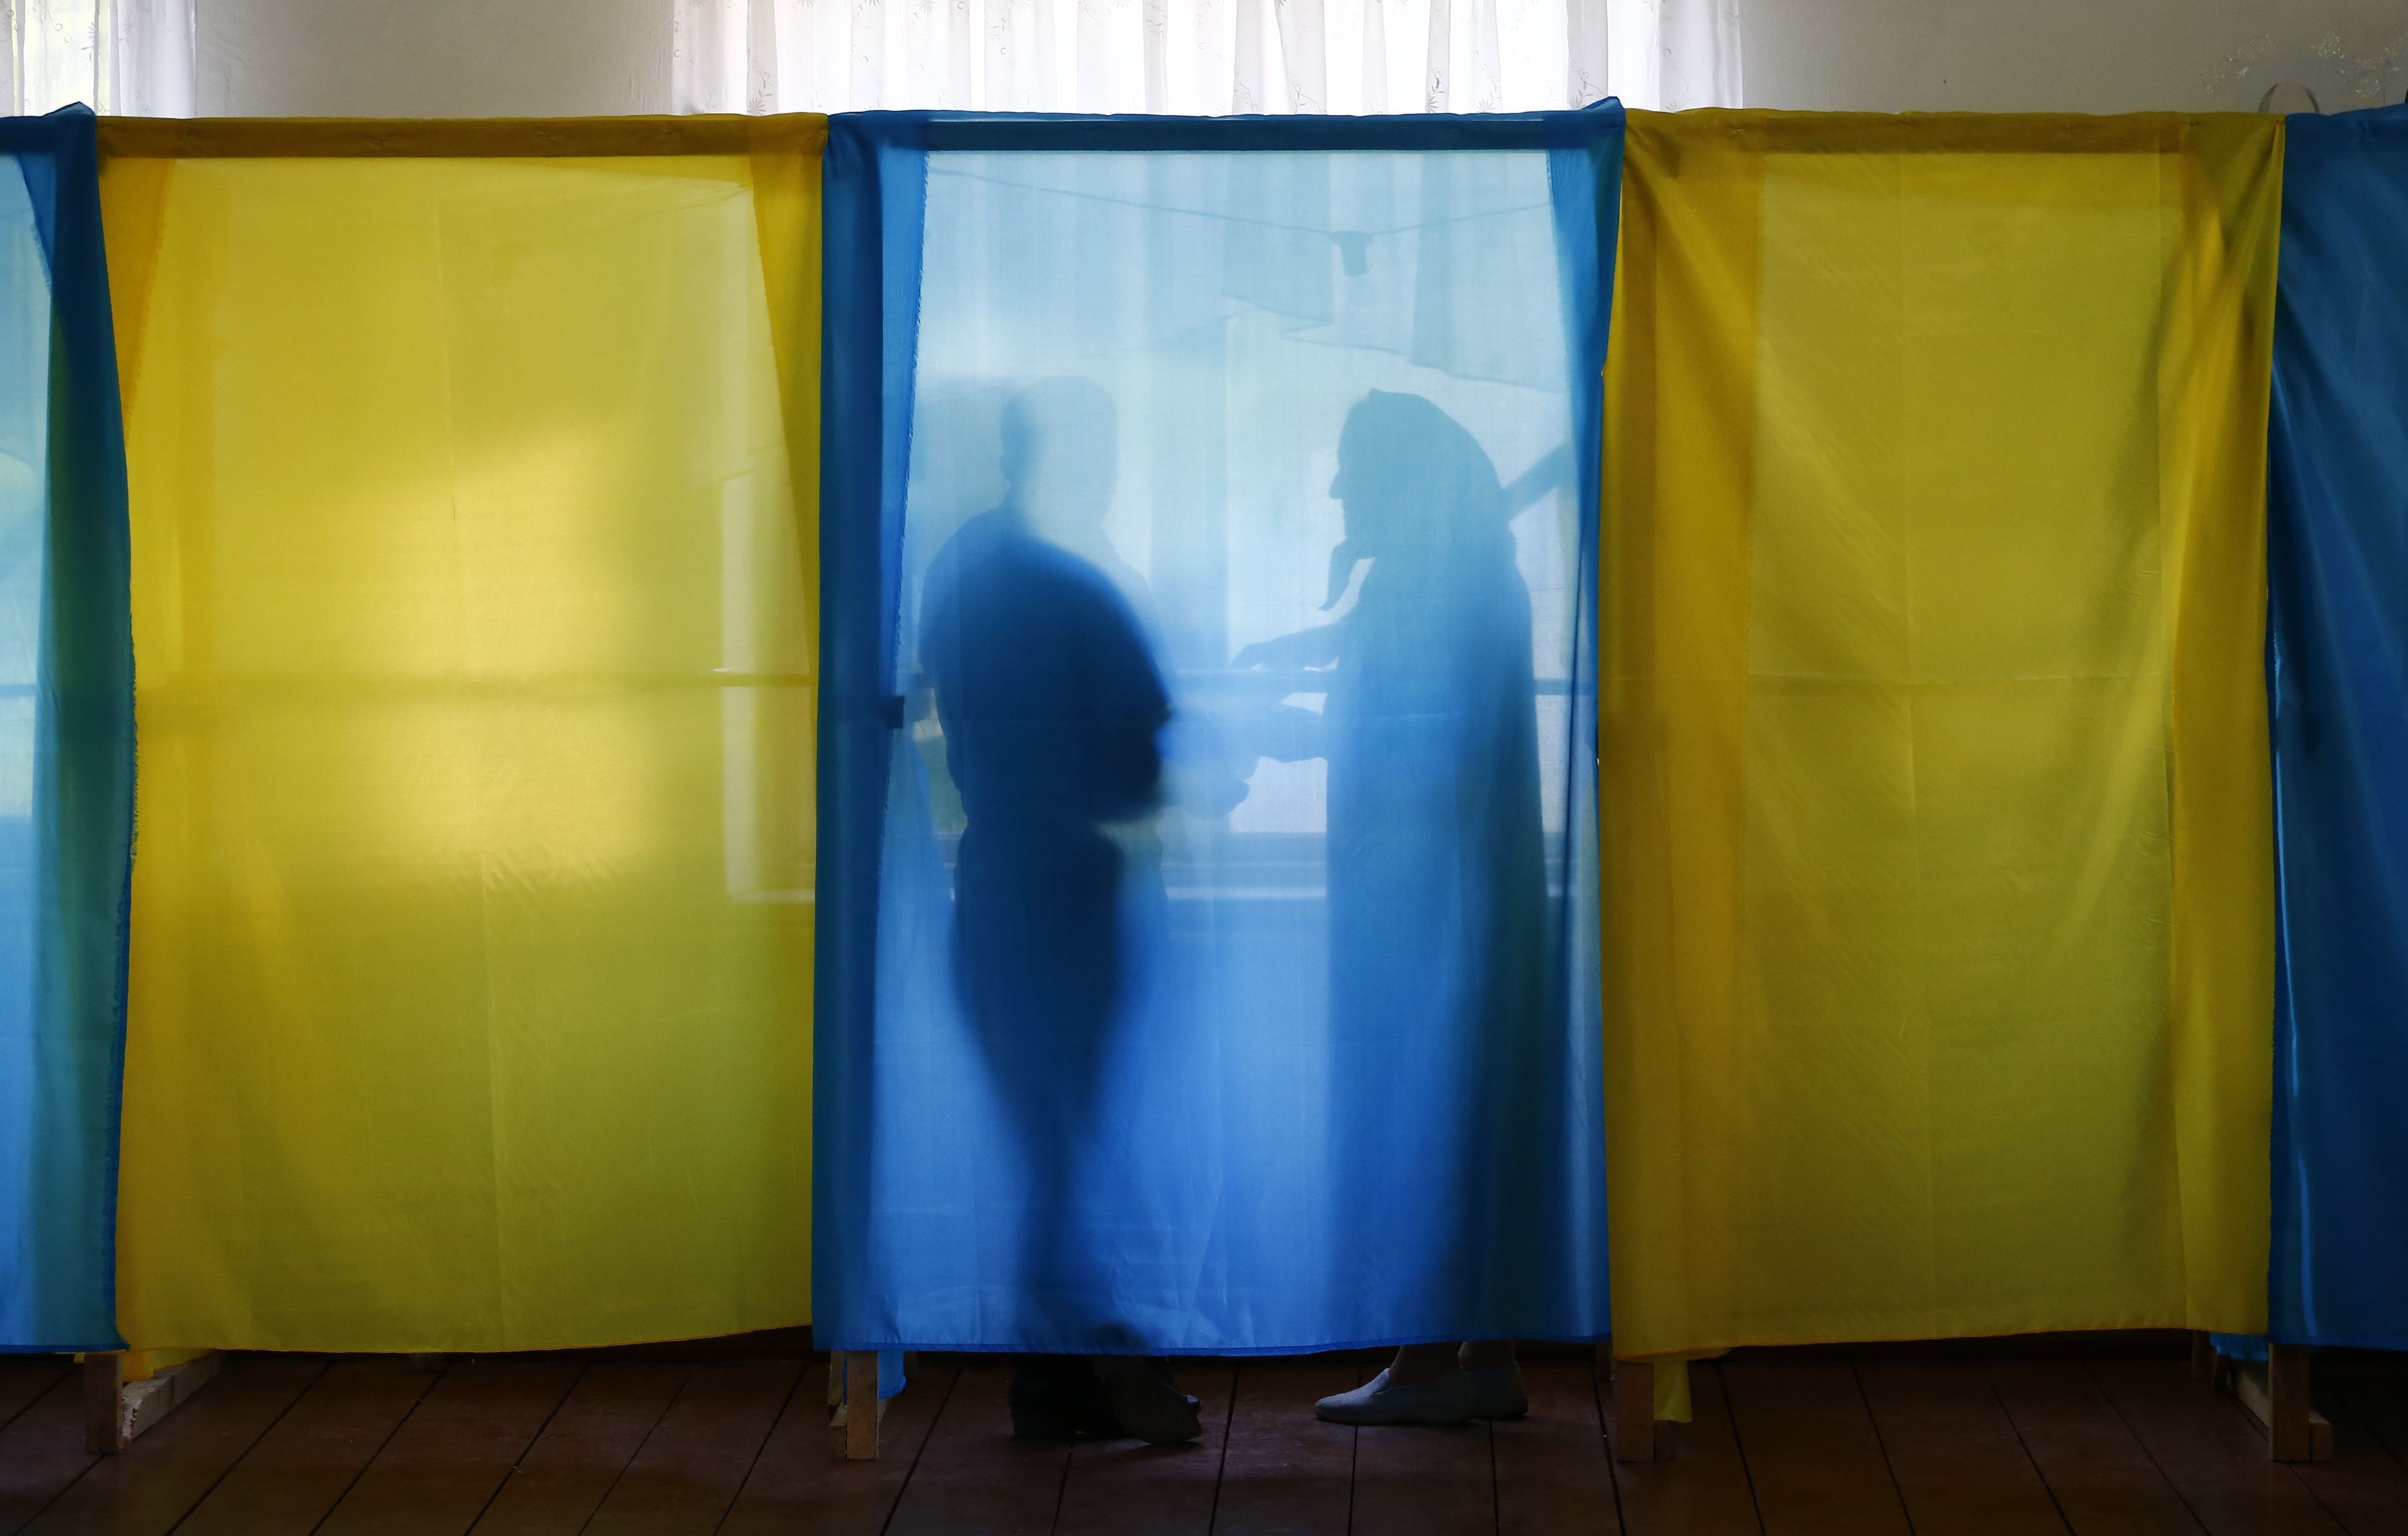 Ψηφίζουν σήμερα για πρόεδρο οι Ουκρανοί